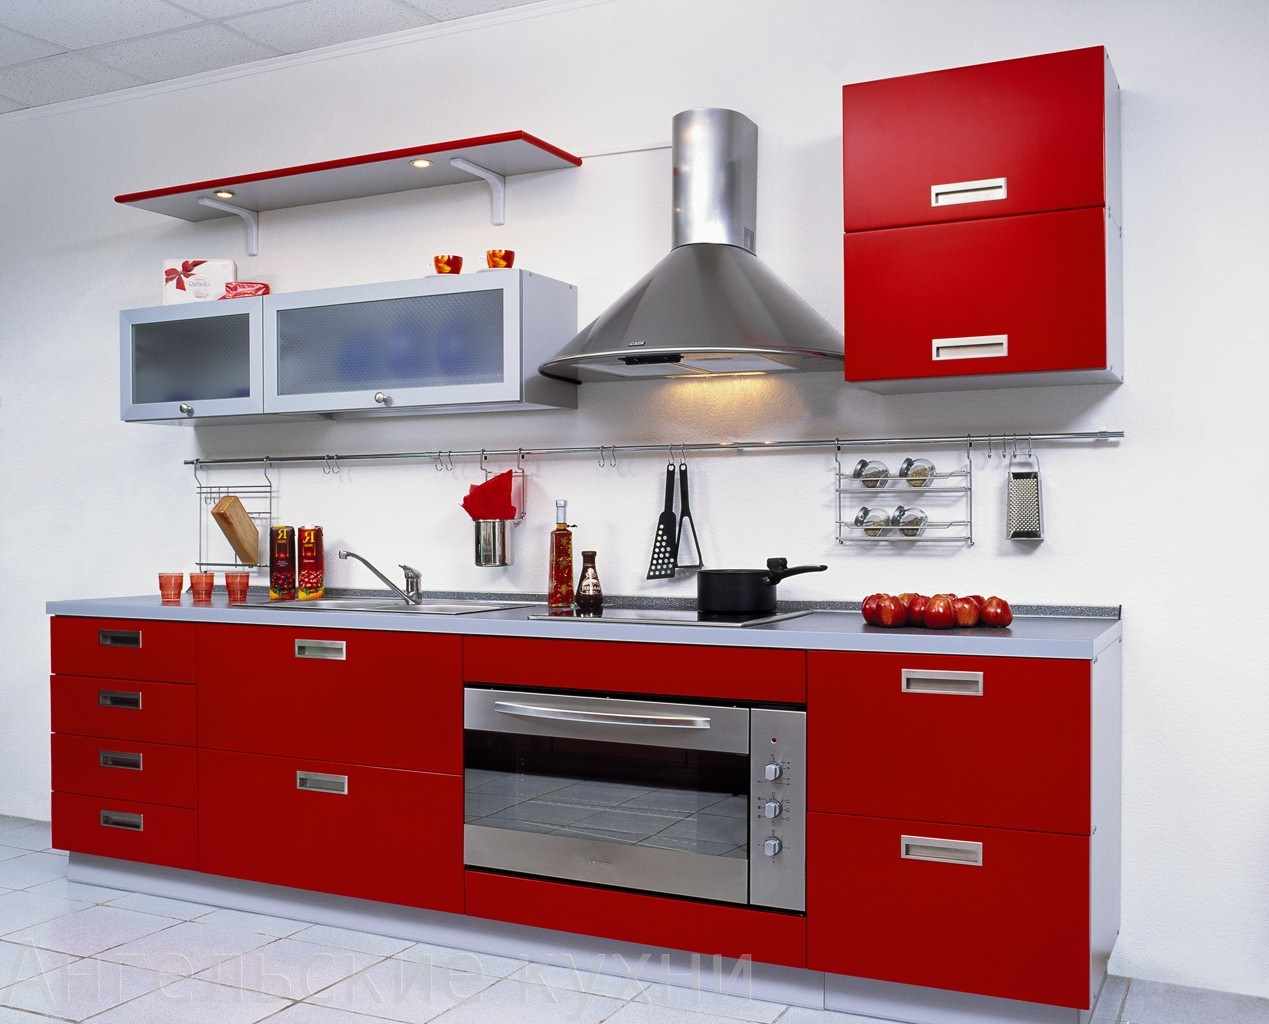 ตัวอย่างของการออกแบบห้องครัวสีแดงที่ผิดปกติ